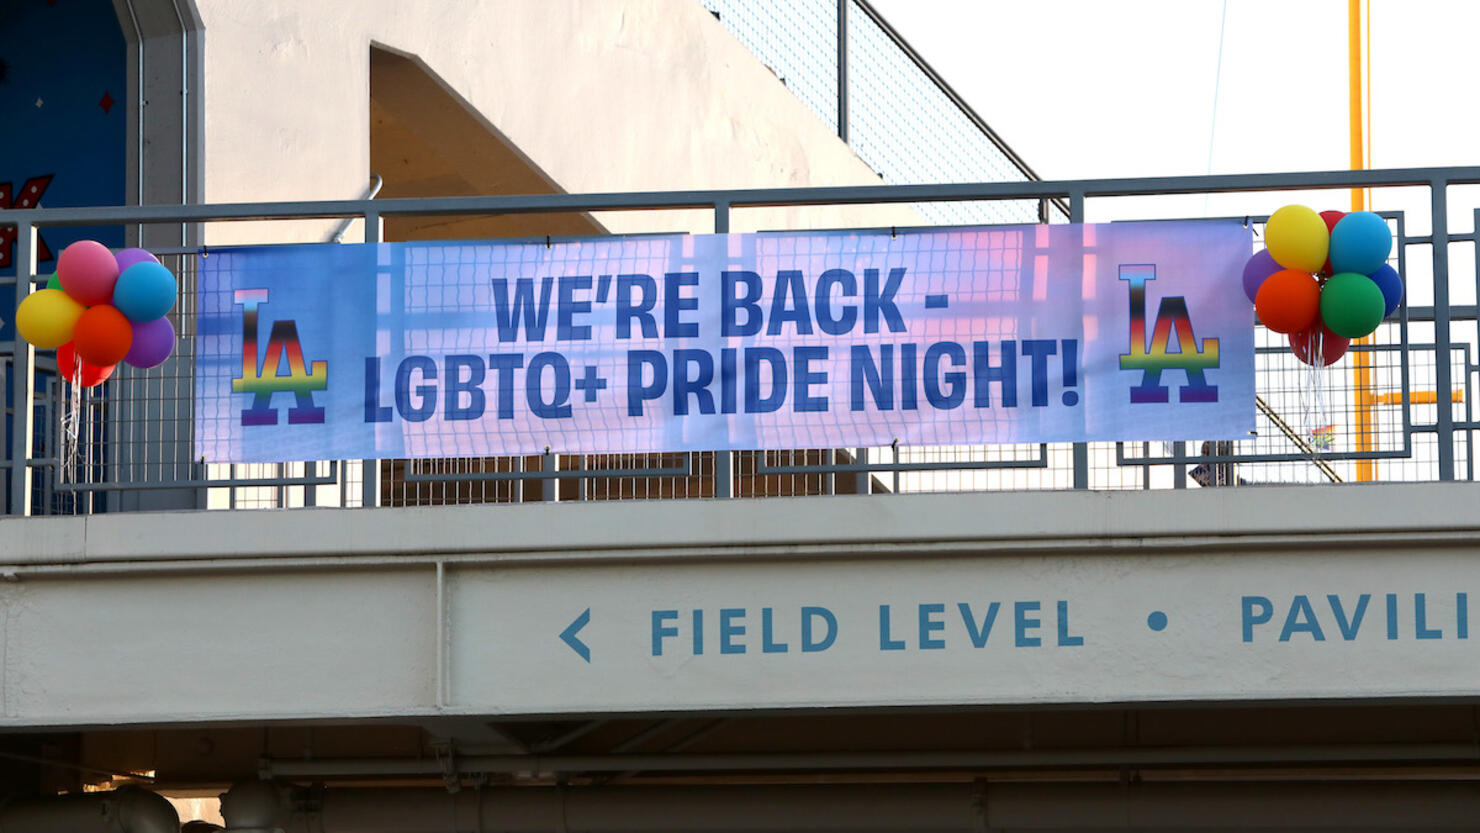 LA Pride And Dodgers Host Annual LGBTQ+ Pride Night